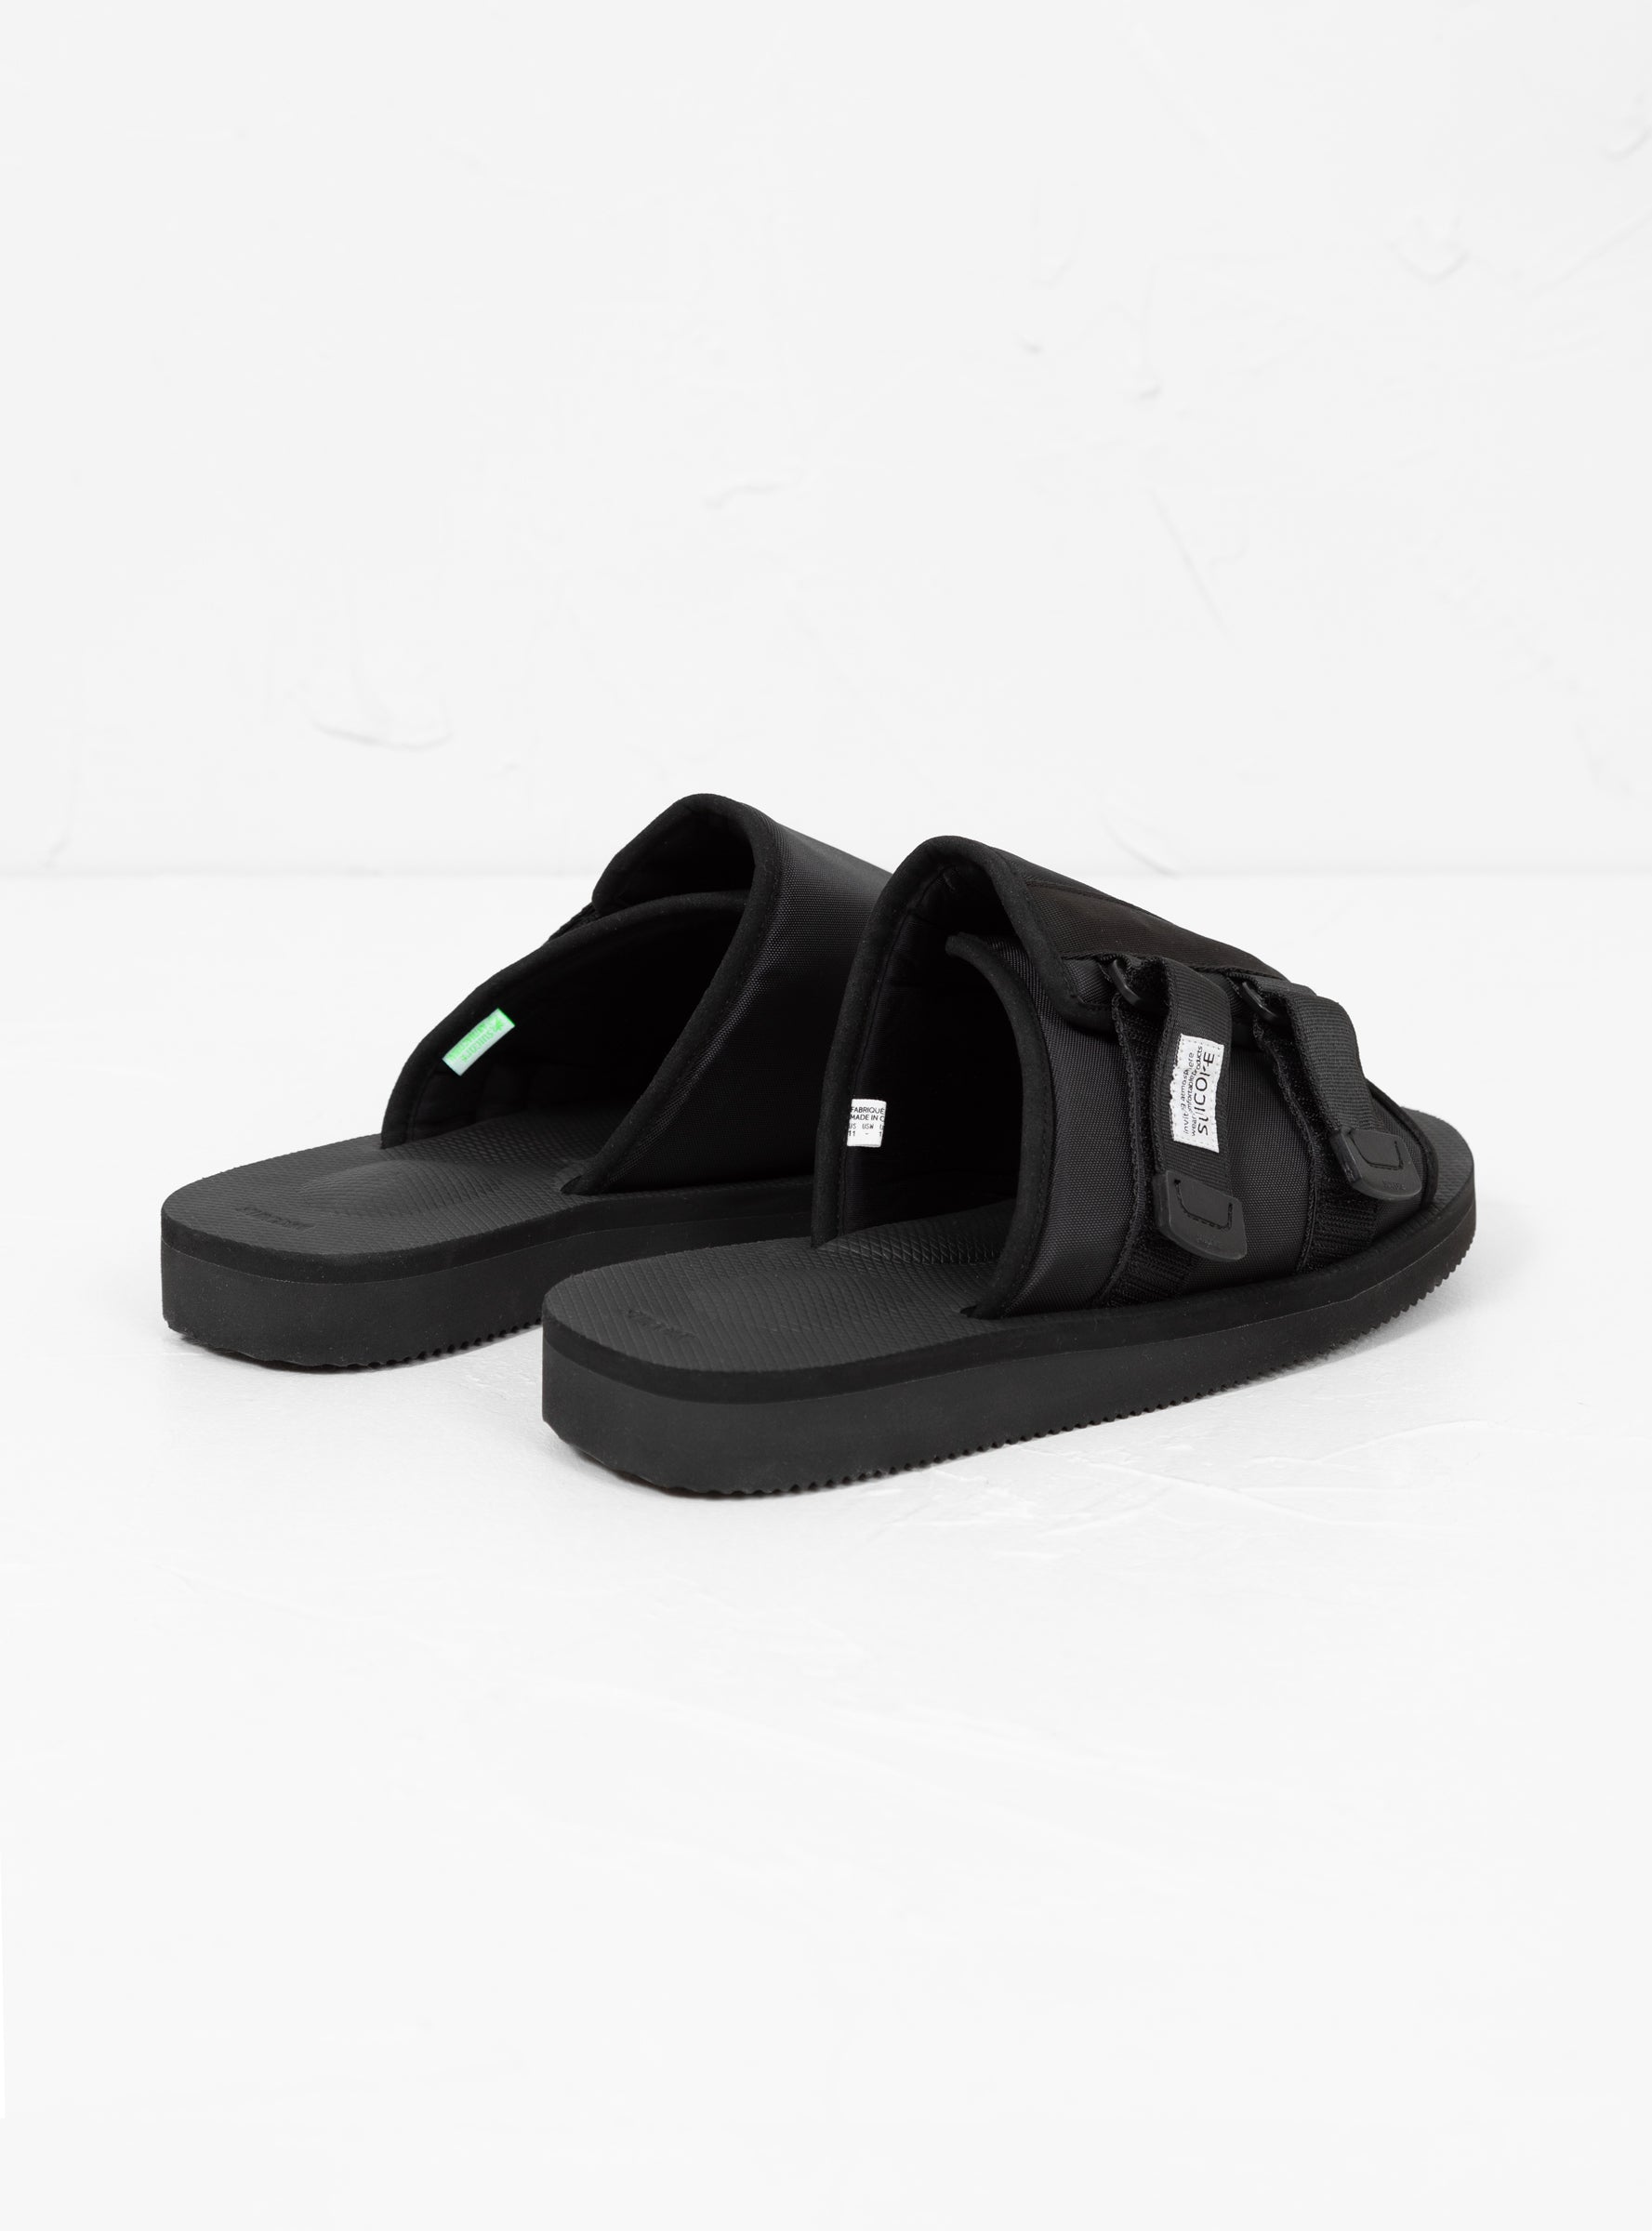 Suicoke Suicoke KAW-CAB Sandals Black - Size: UK 10